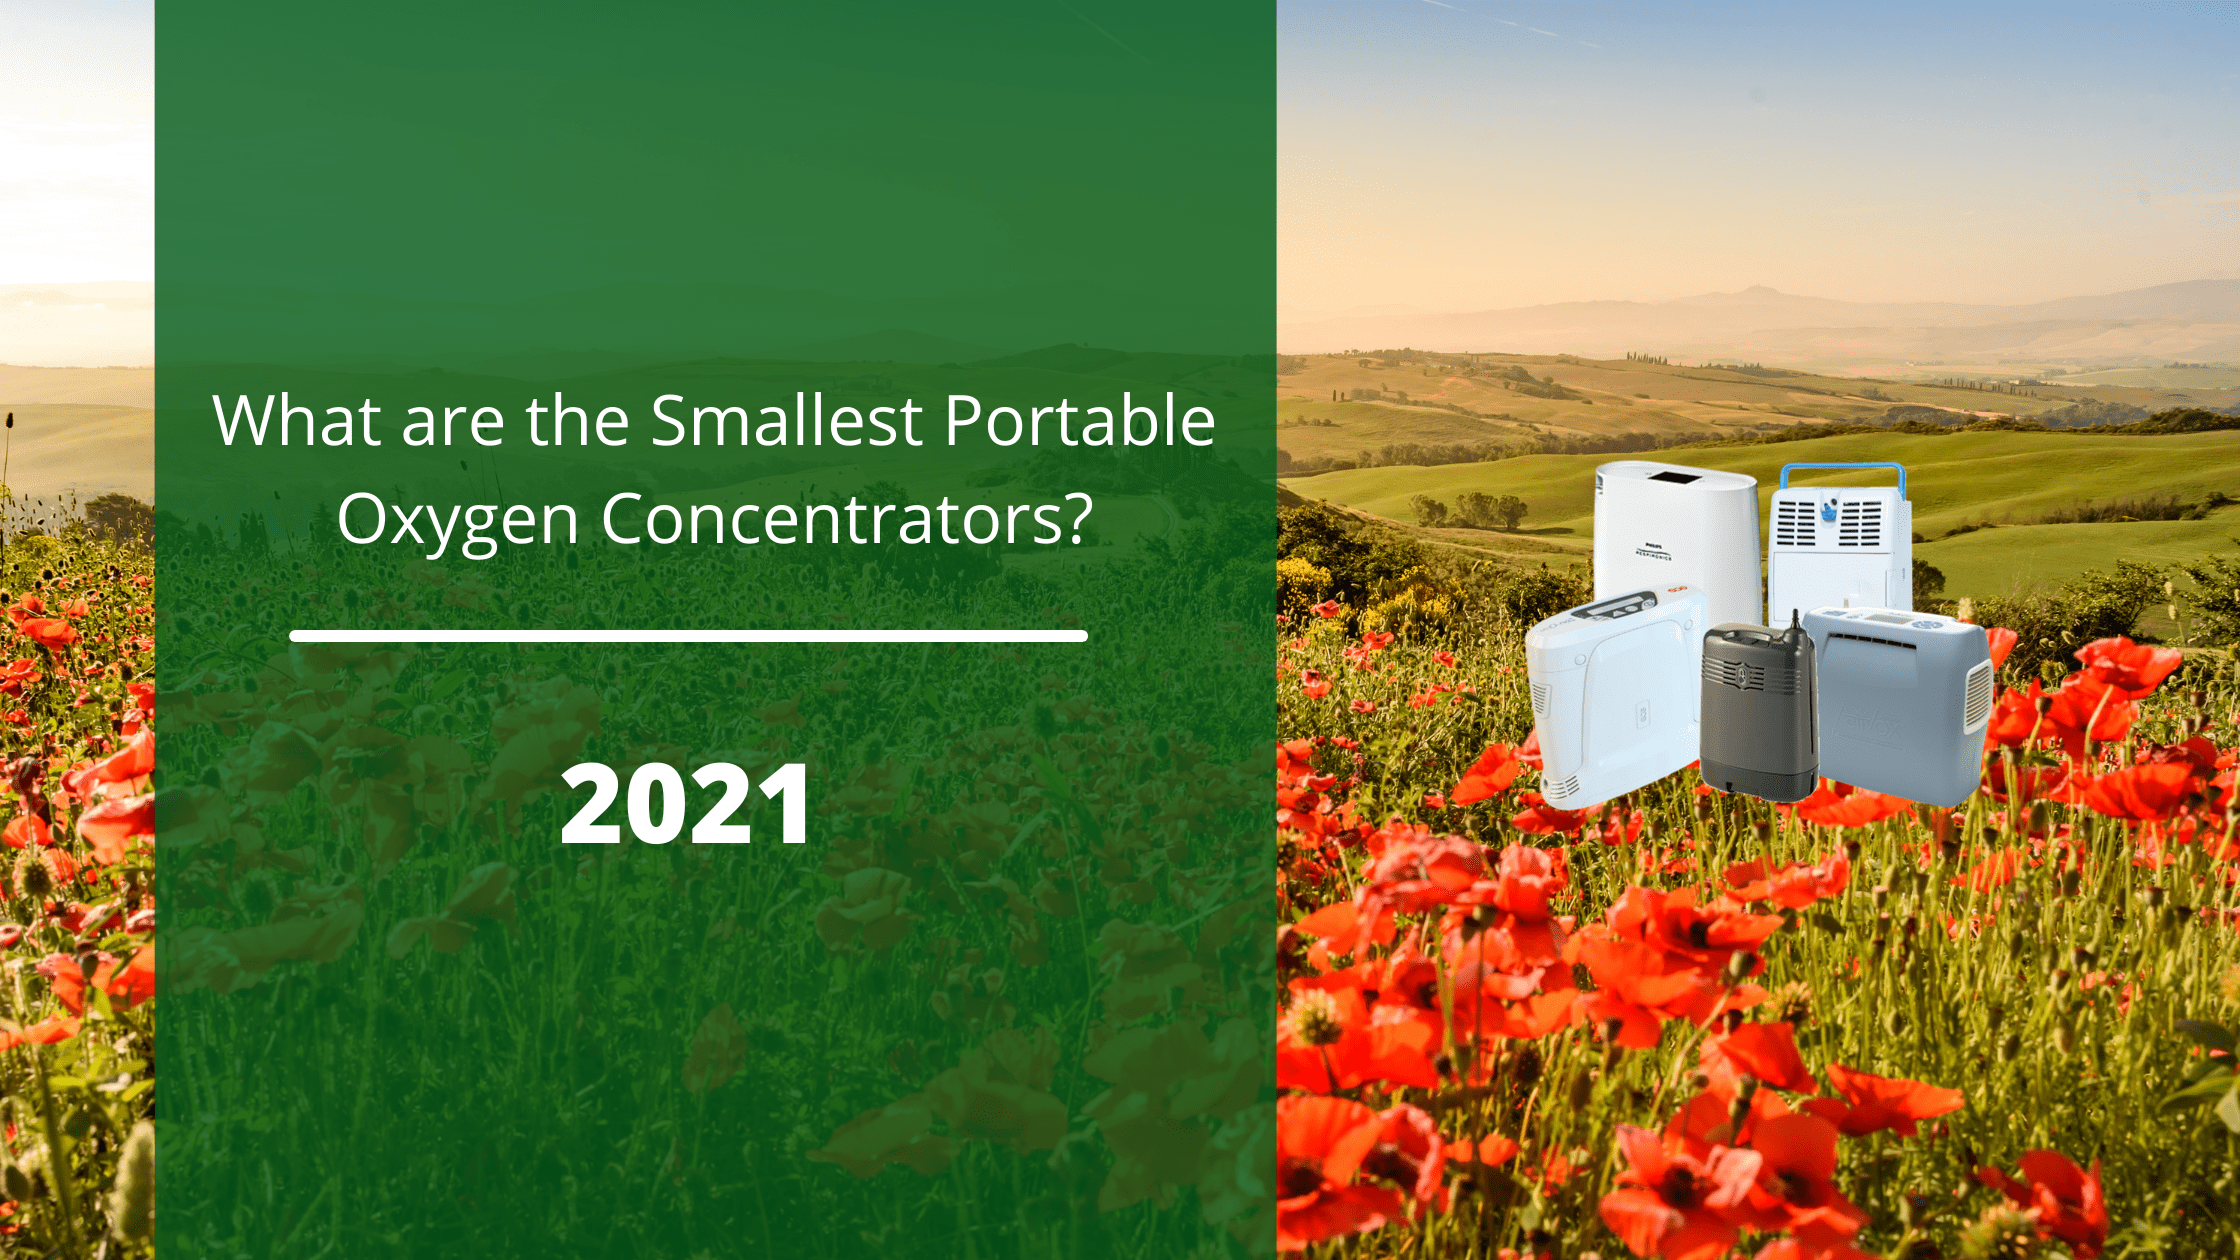 Smallest portable oxygen concentrators 2021